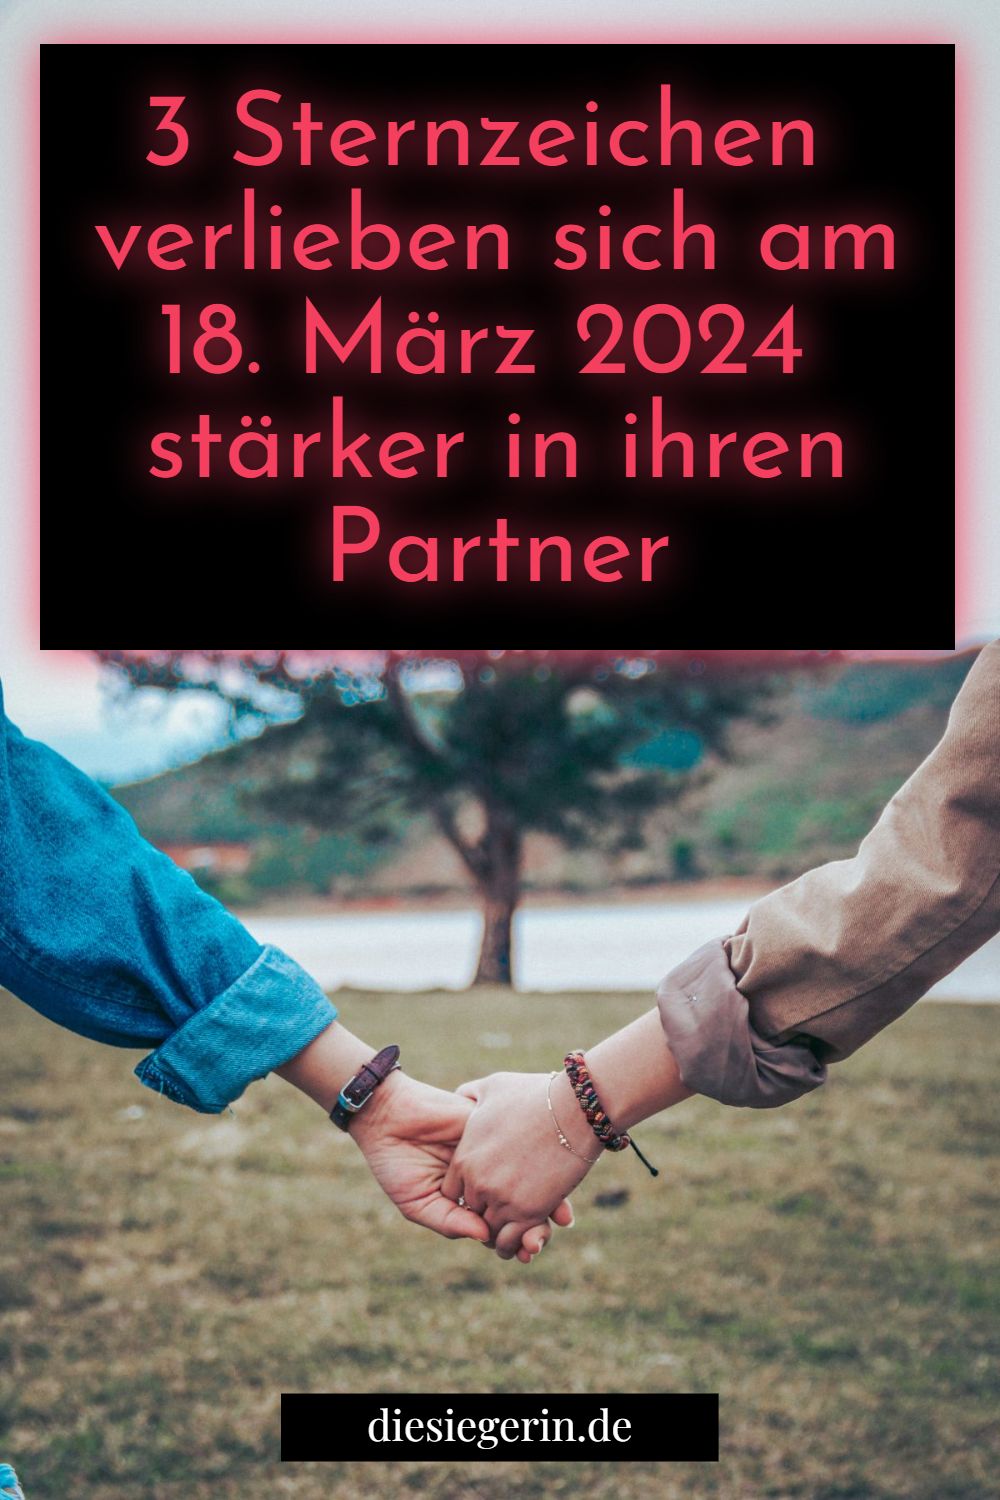 3 Sternzeichen verlieben sich am 18. März 2024 stärker in ihren Partner